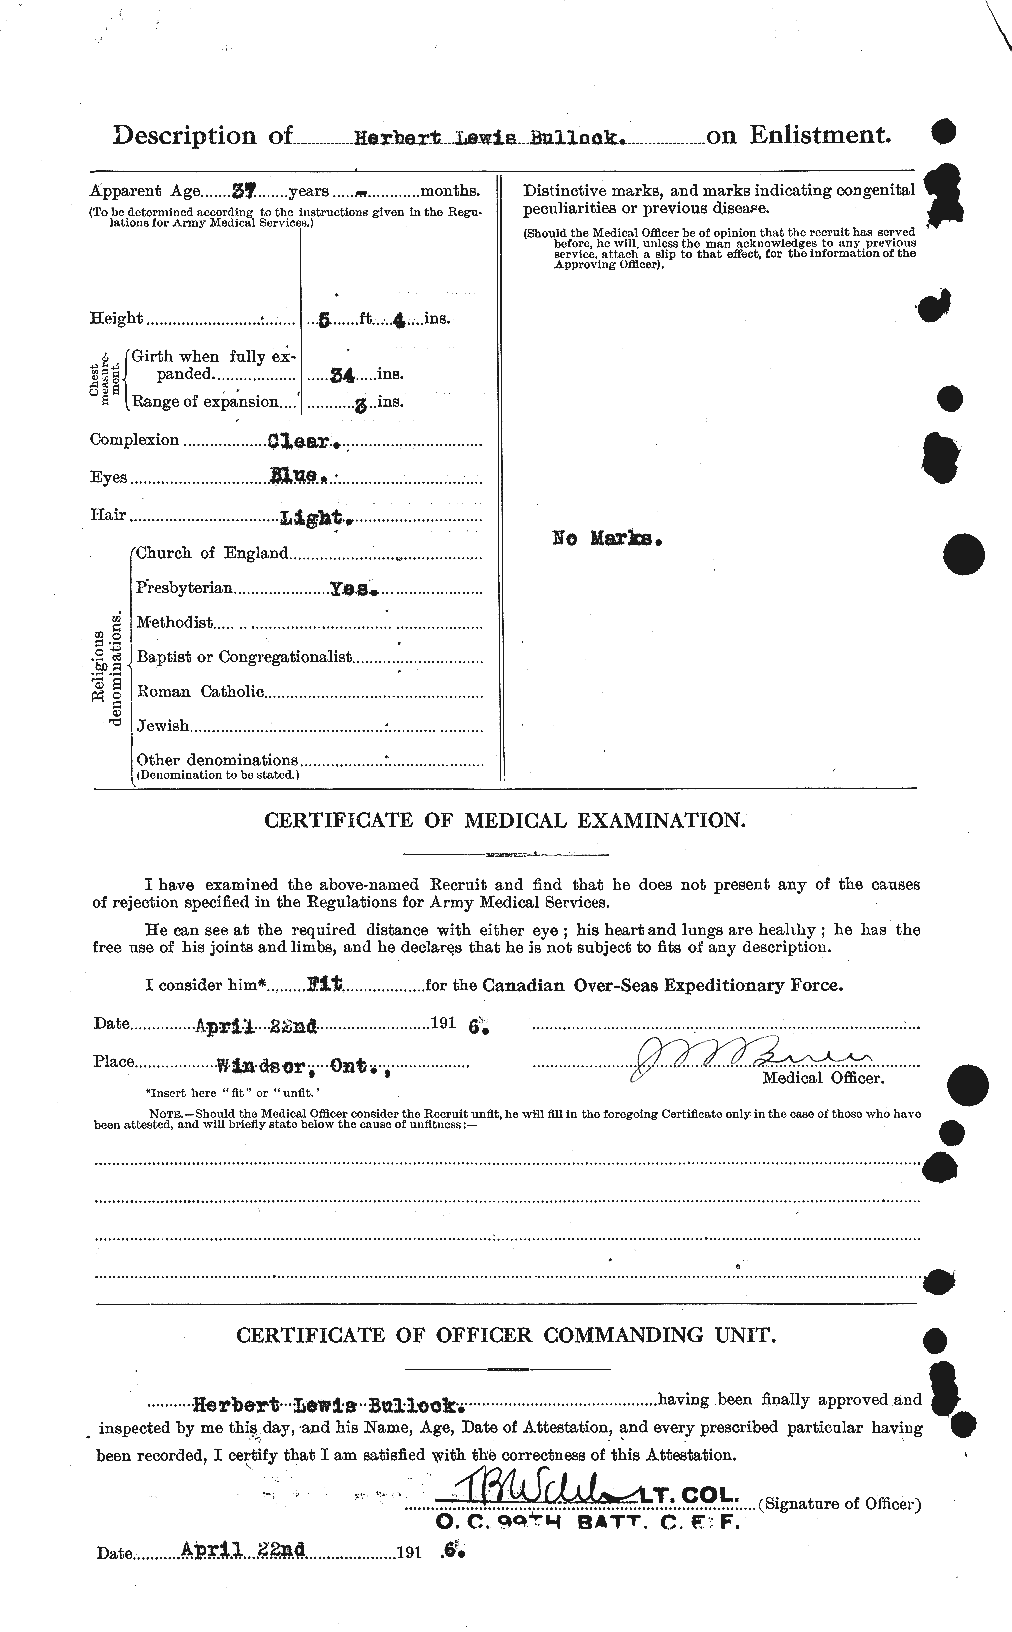 Dossiers du Personnel de la Première Guerre mondiale - CEC 269717b